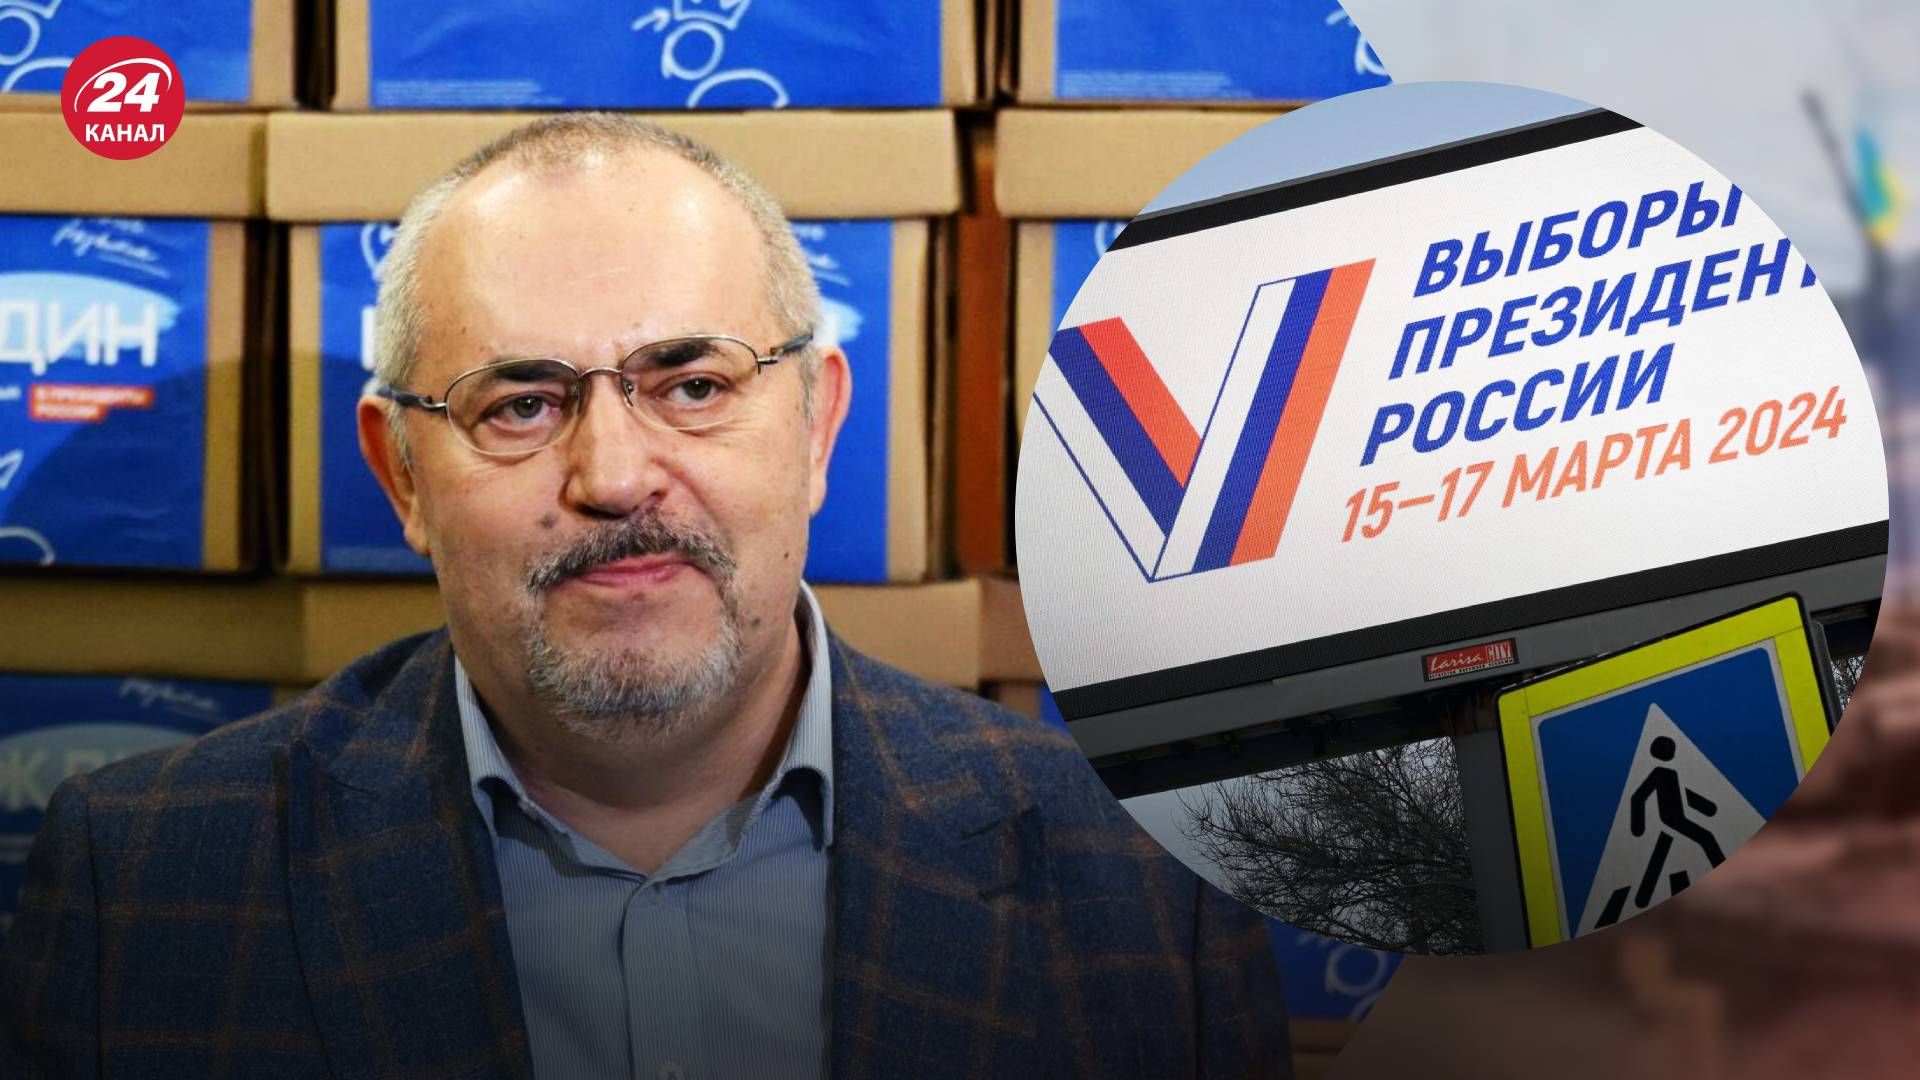 Оппозиционера Бориса Надеждина не допустили к президентским выборам в России - 24 Канал